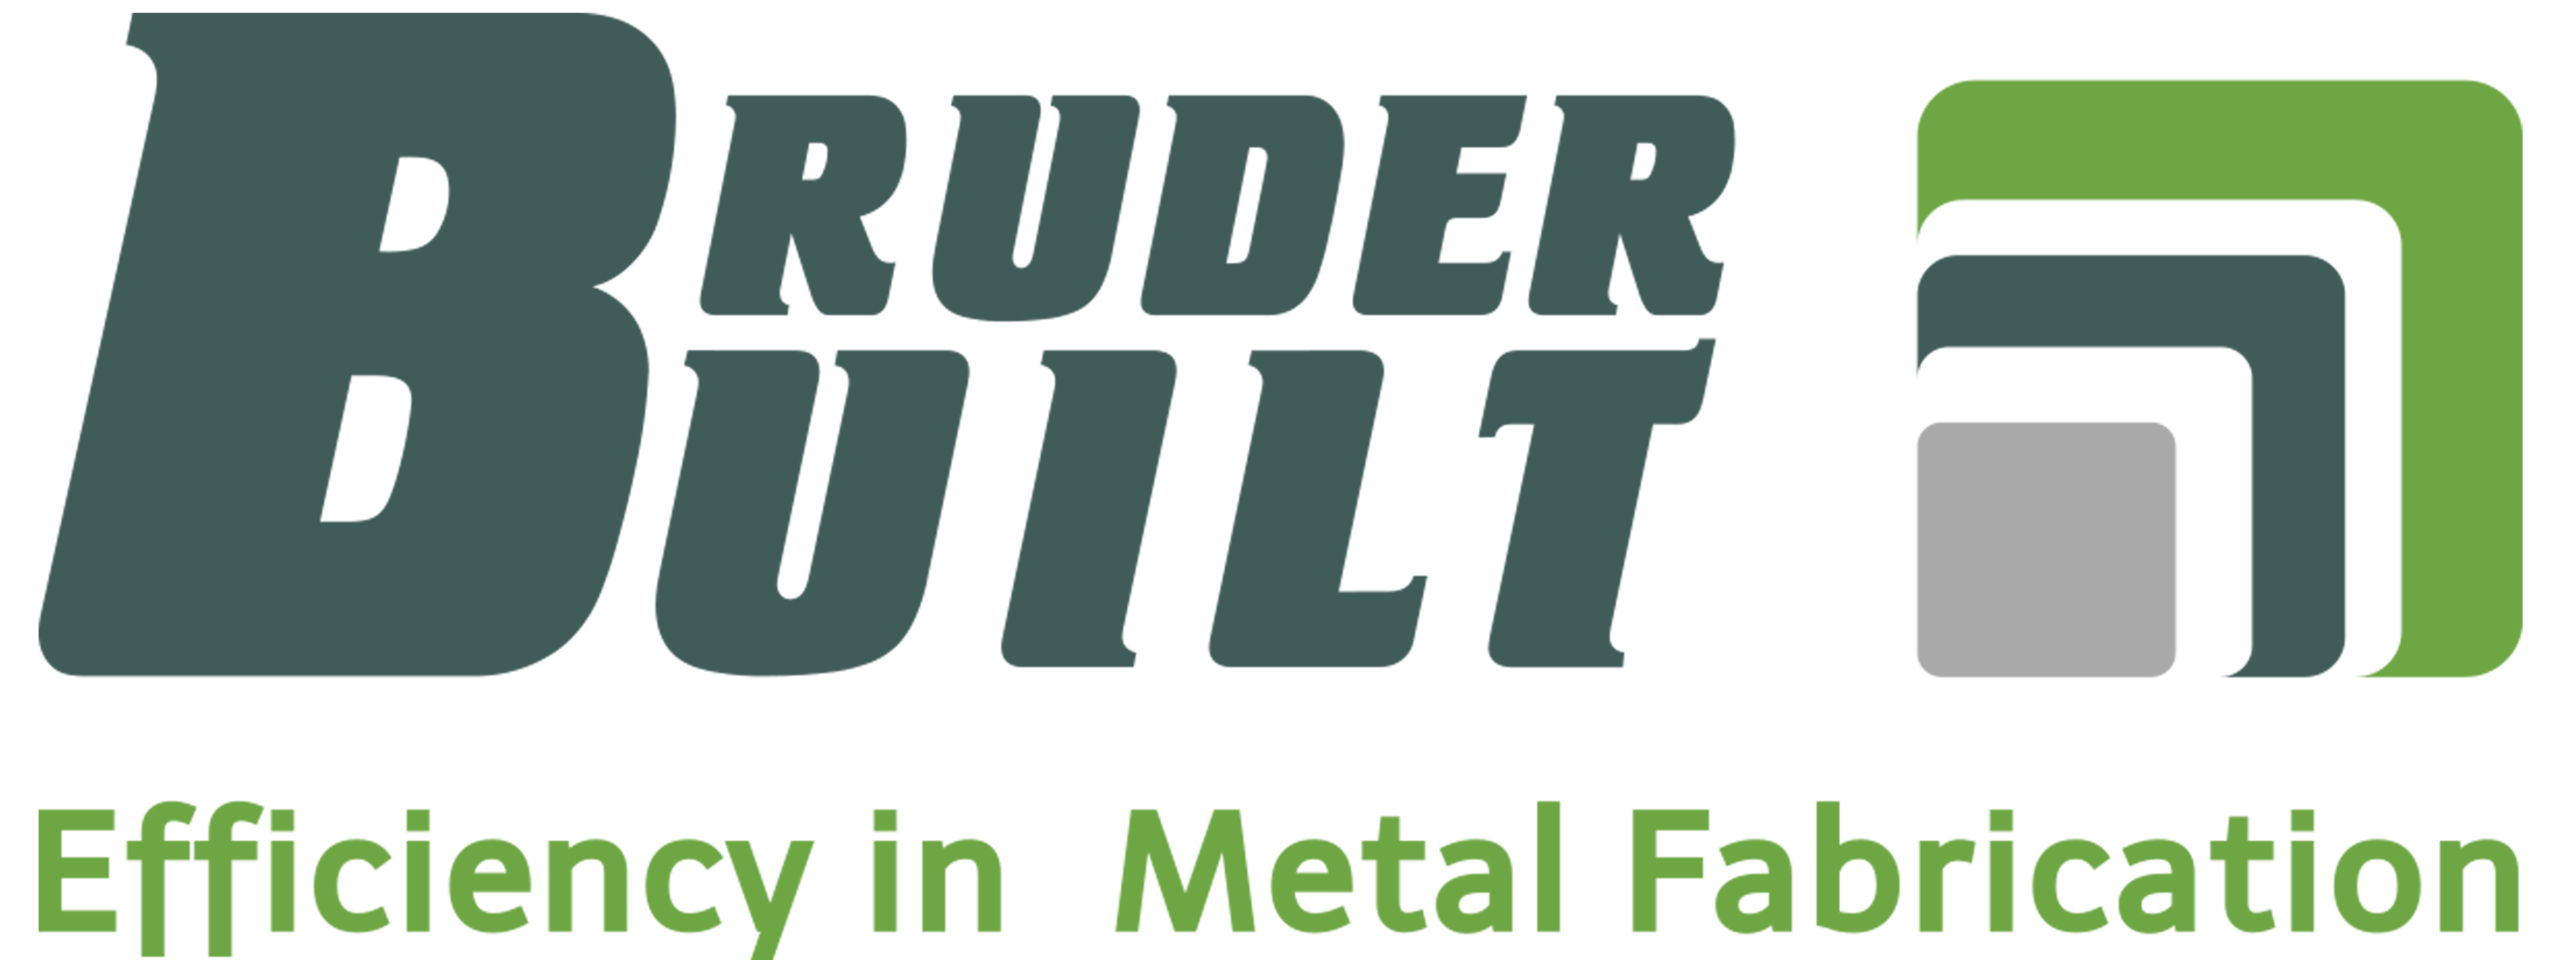 Bruder Built Logo